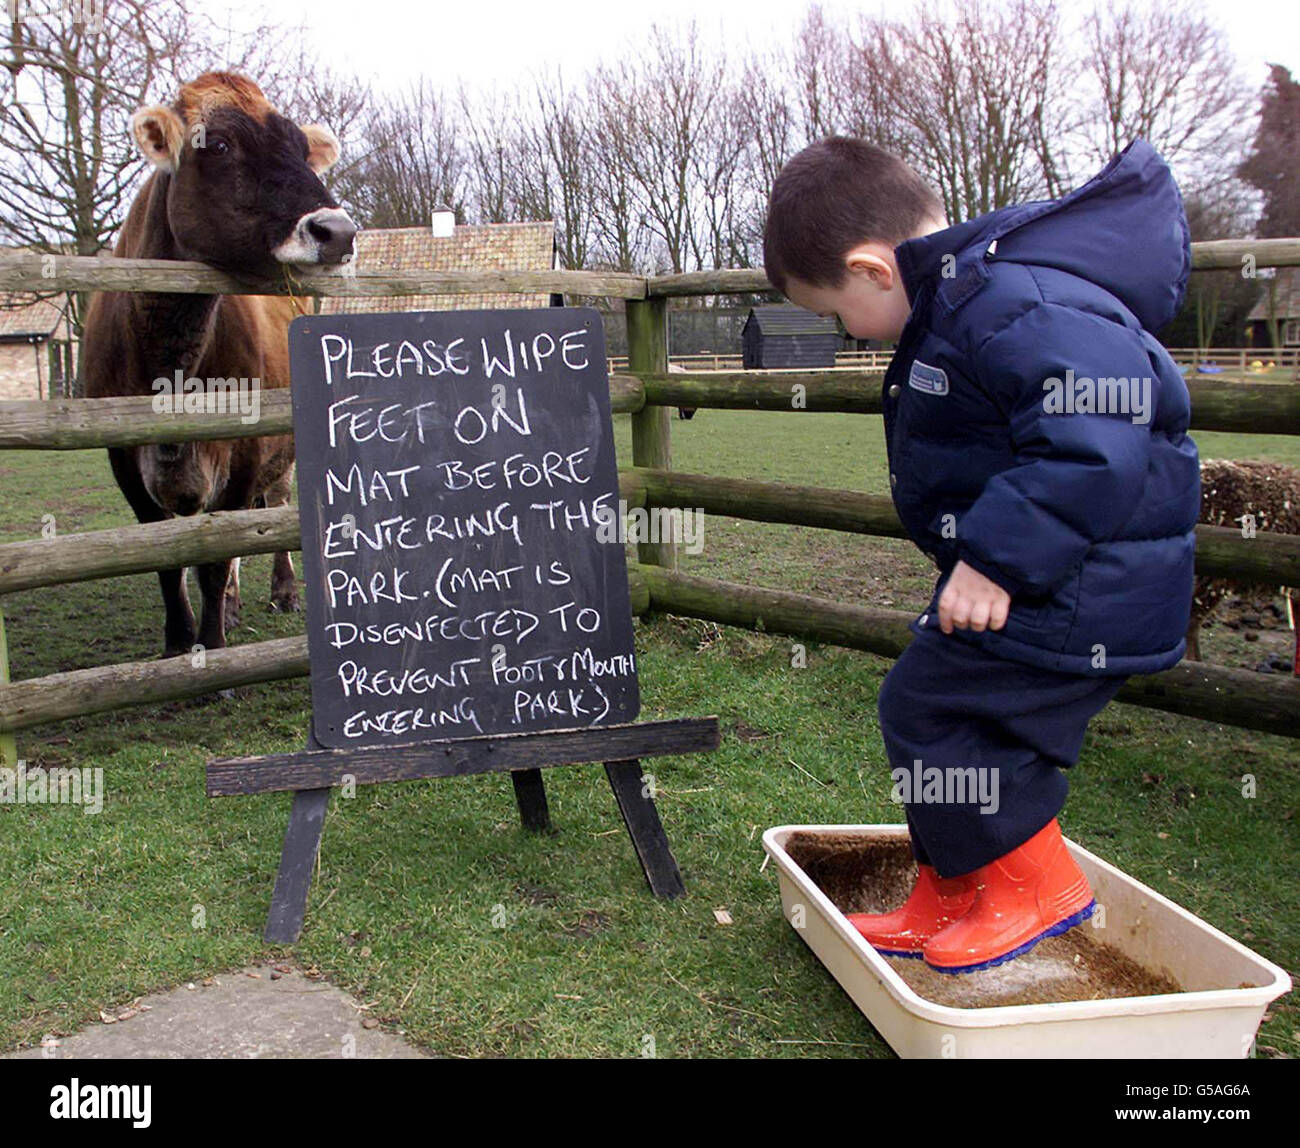 Der vierjährige Jamie Bruce desinfiziert seine Stiefel, bevor er die Baumkrone Nursery School besucht, wo Kinder ihre Schuhe wegen des Ausbruchs der Maul- und Klauenseuche desinfizieren mussten. Die Gärtnerei befindet sich in der Mitte des Willers Mill Wildlife Park in Shepreth. * ...Cambridgeshire. Stockfoto